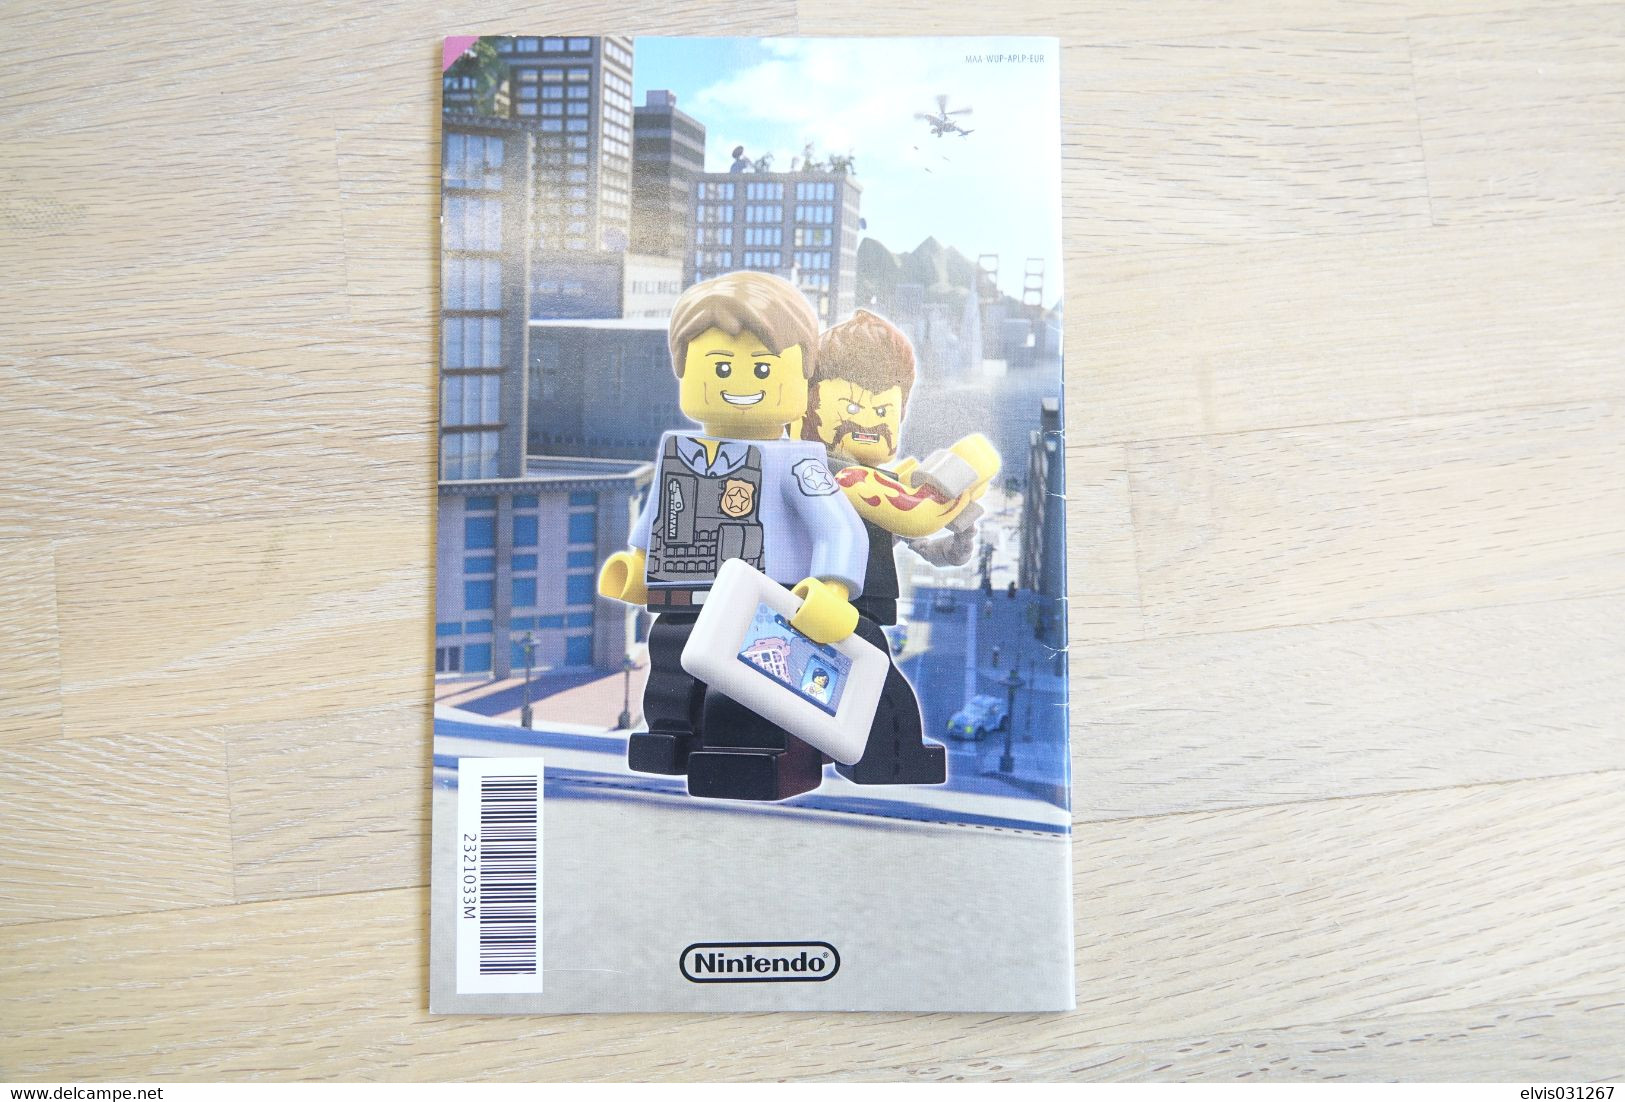 NINTENDO WII  : MANUAL : Lego City Undercover - Game - Manual - Letteratura E Istruzioni